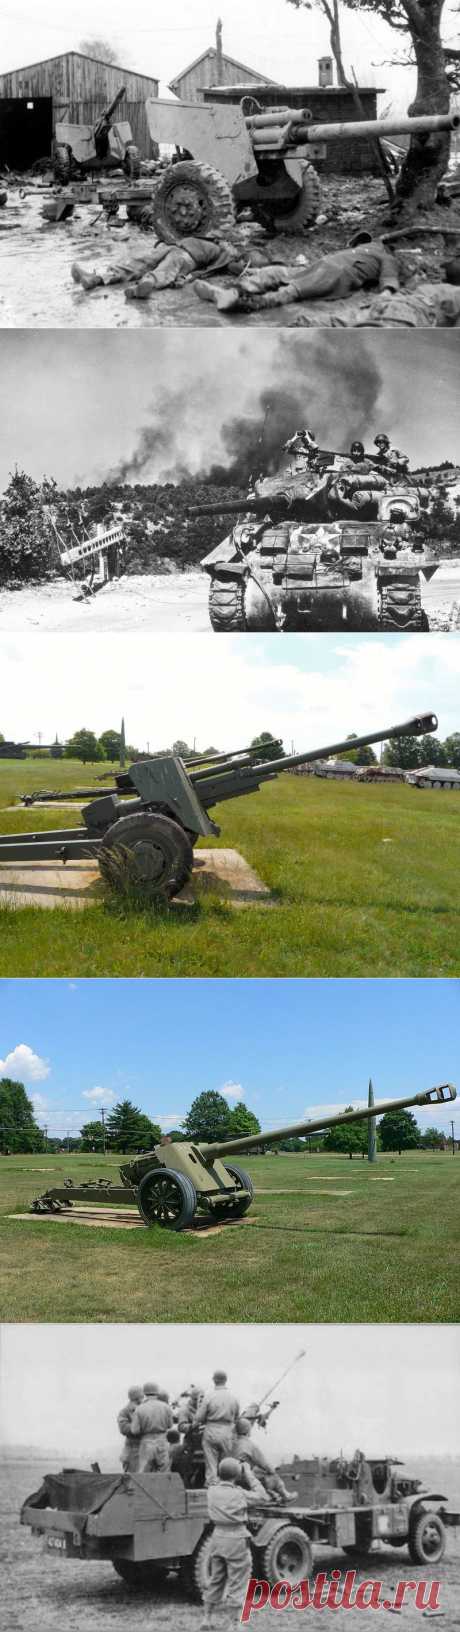 Американская противотанковая артиллерия во Второй мировой войне - Энциклопедия оружия